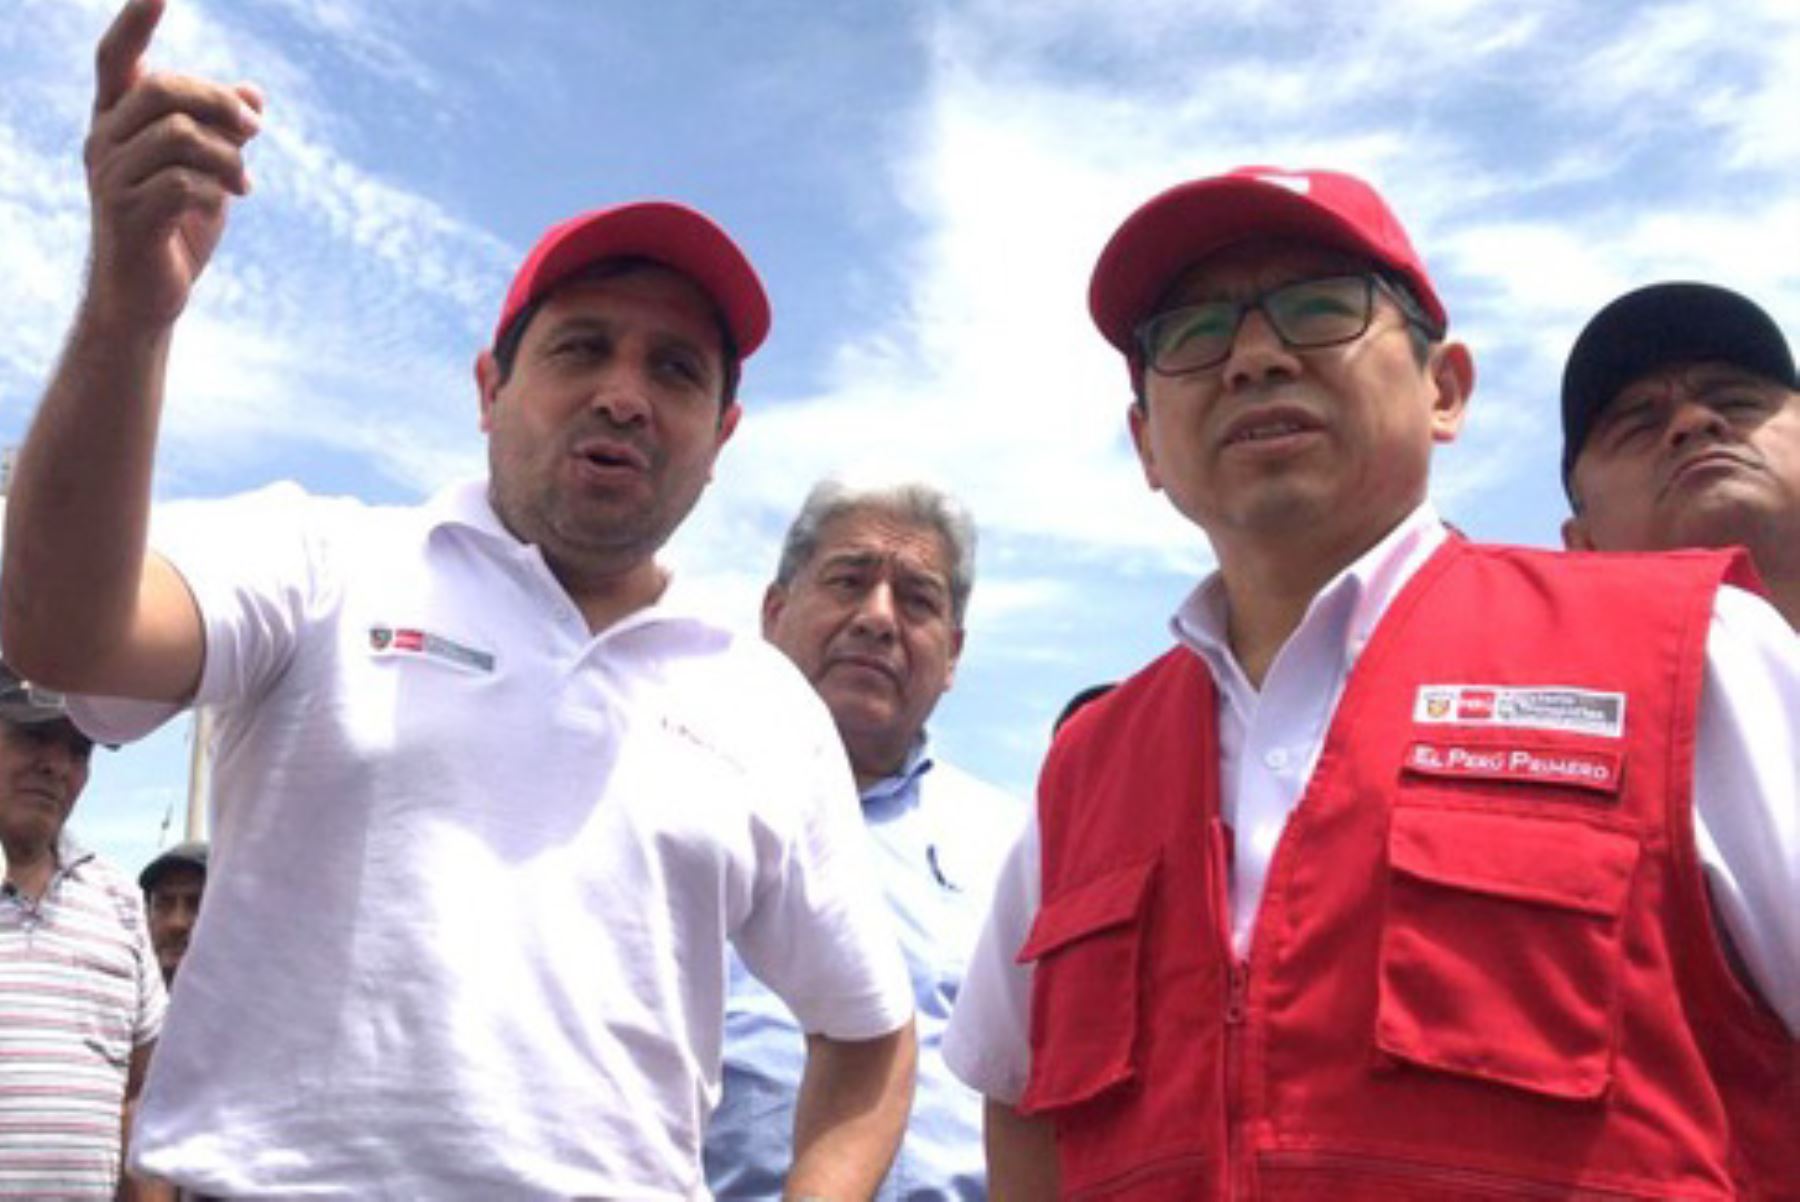 La construcción de la segunda calzada de la carretera Panamericana Sur, desde Lima hacia Ica, se empezará a construir en diciembre de este año, anunció el ministro de Transportes y Comunicaciones, Edmer Trujillo, en su visita de trabajo a la región Ica.